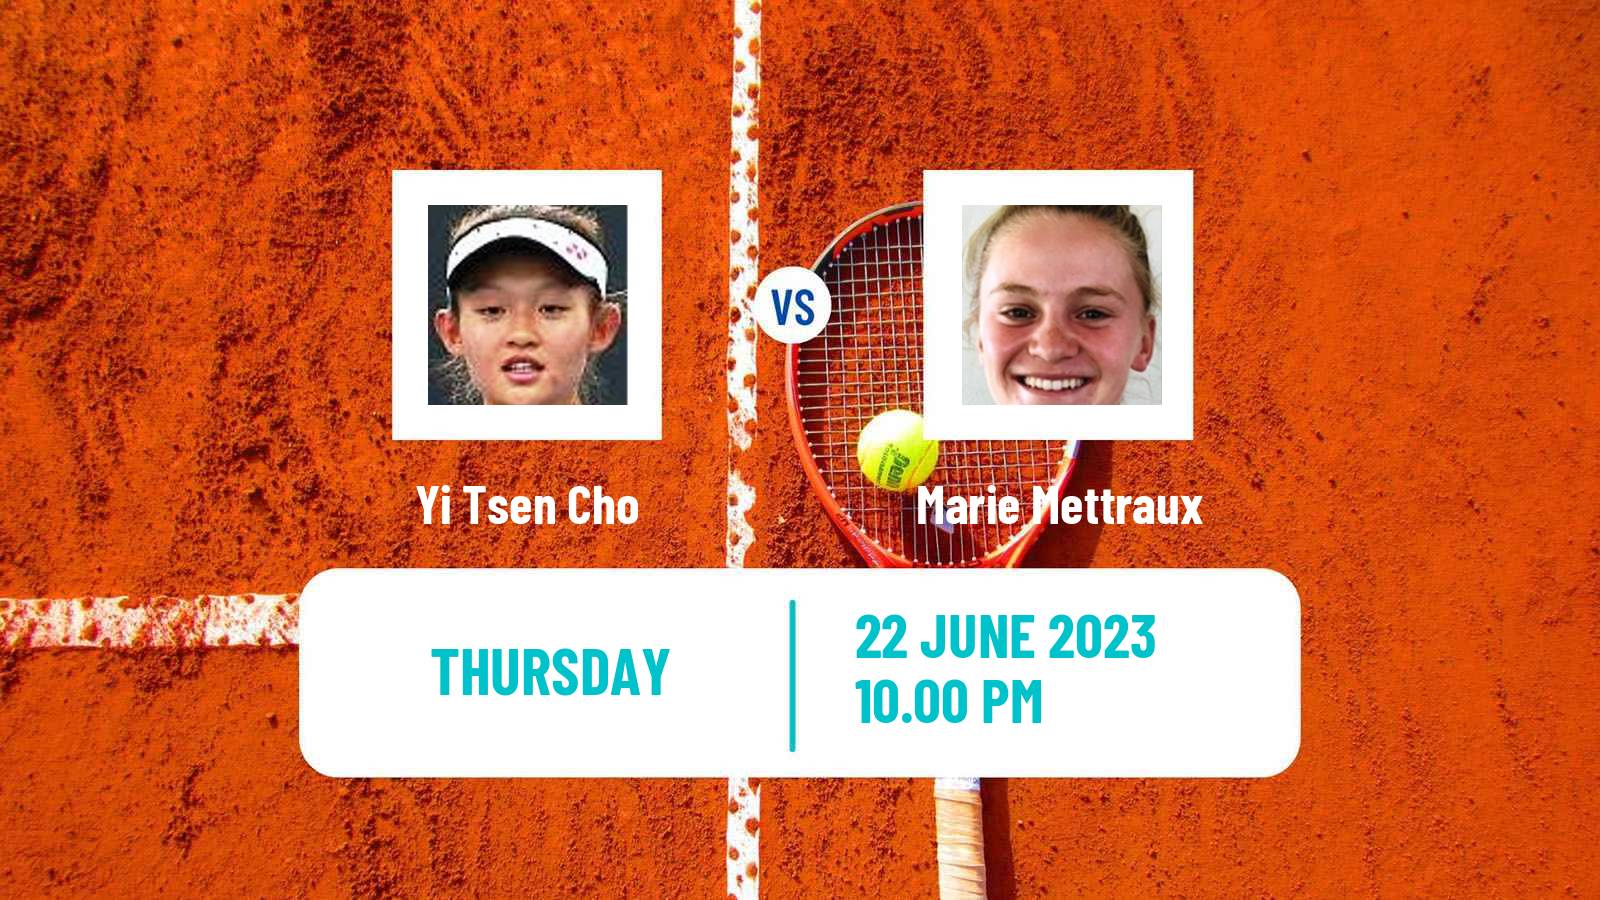 Tennis ITF W25 Tainan 2 Women Yi Tsen Cho - Marie Mettraux